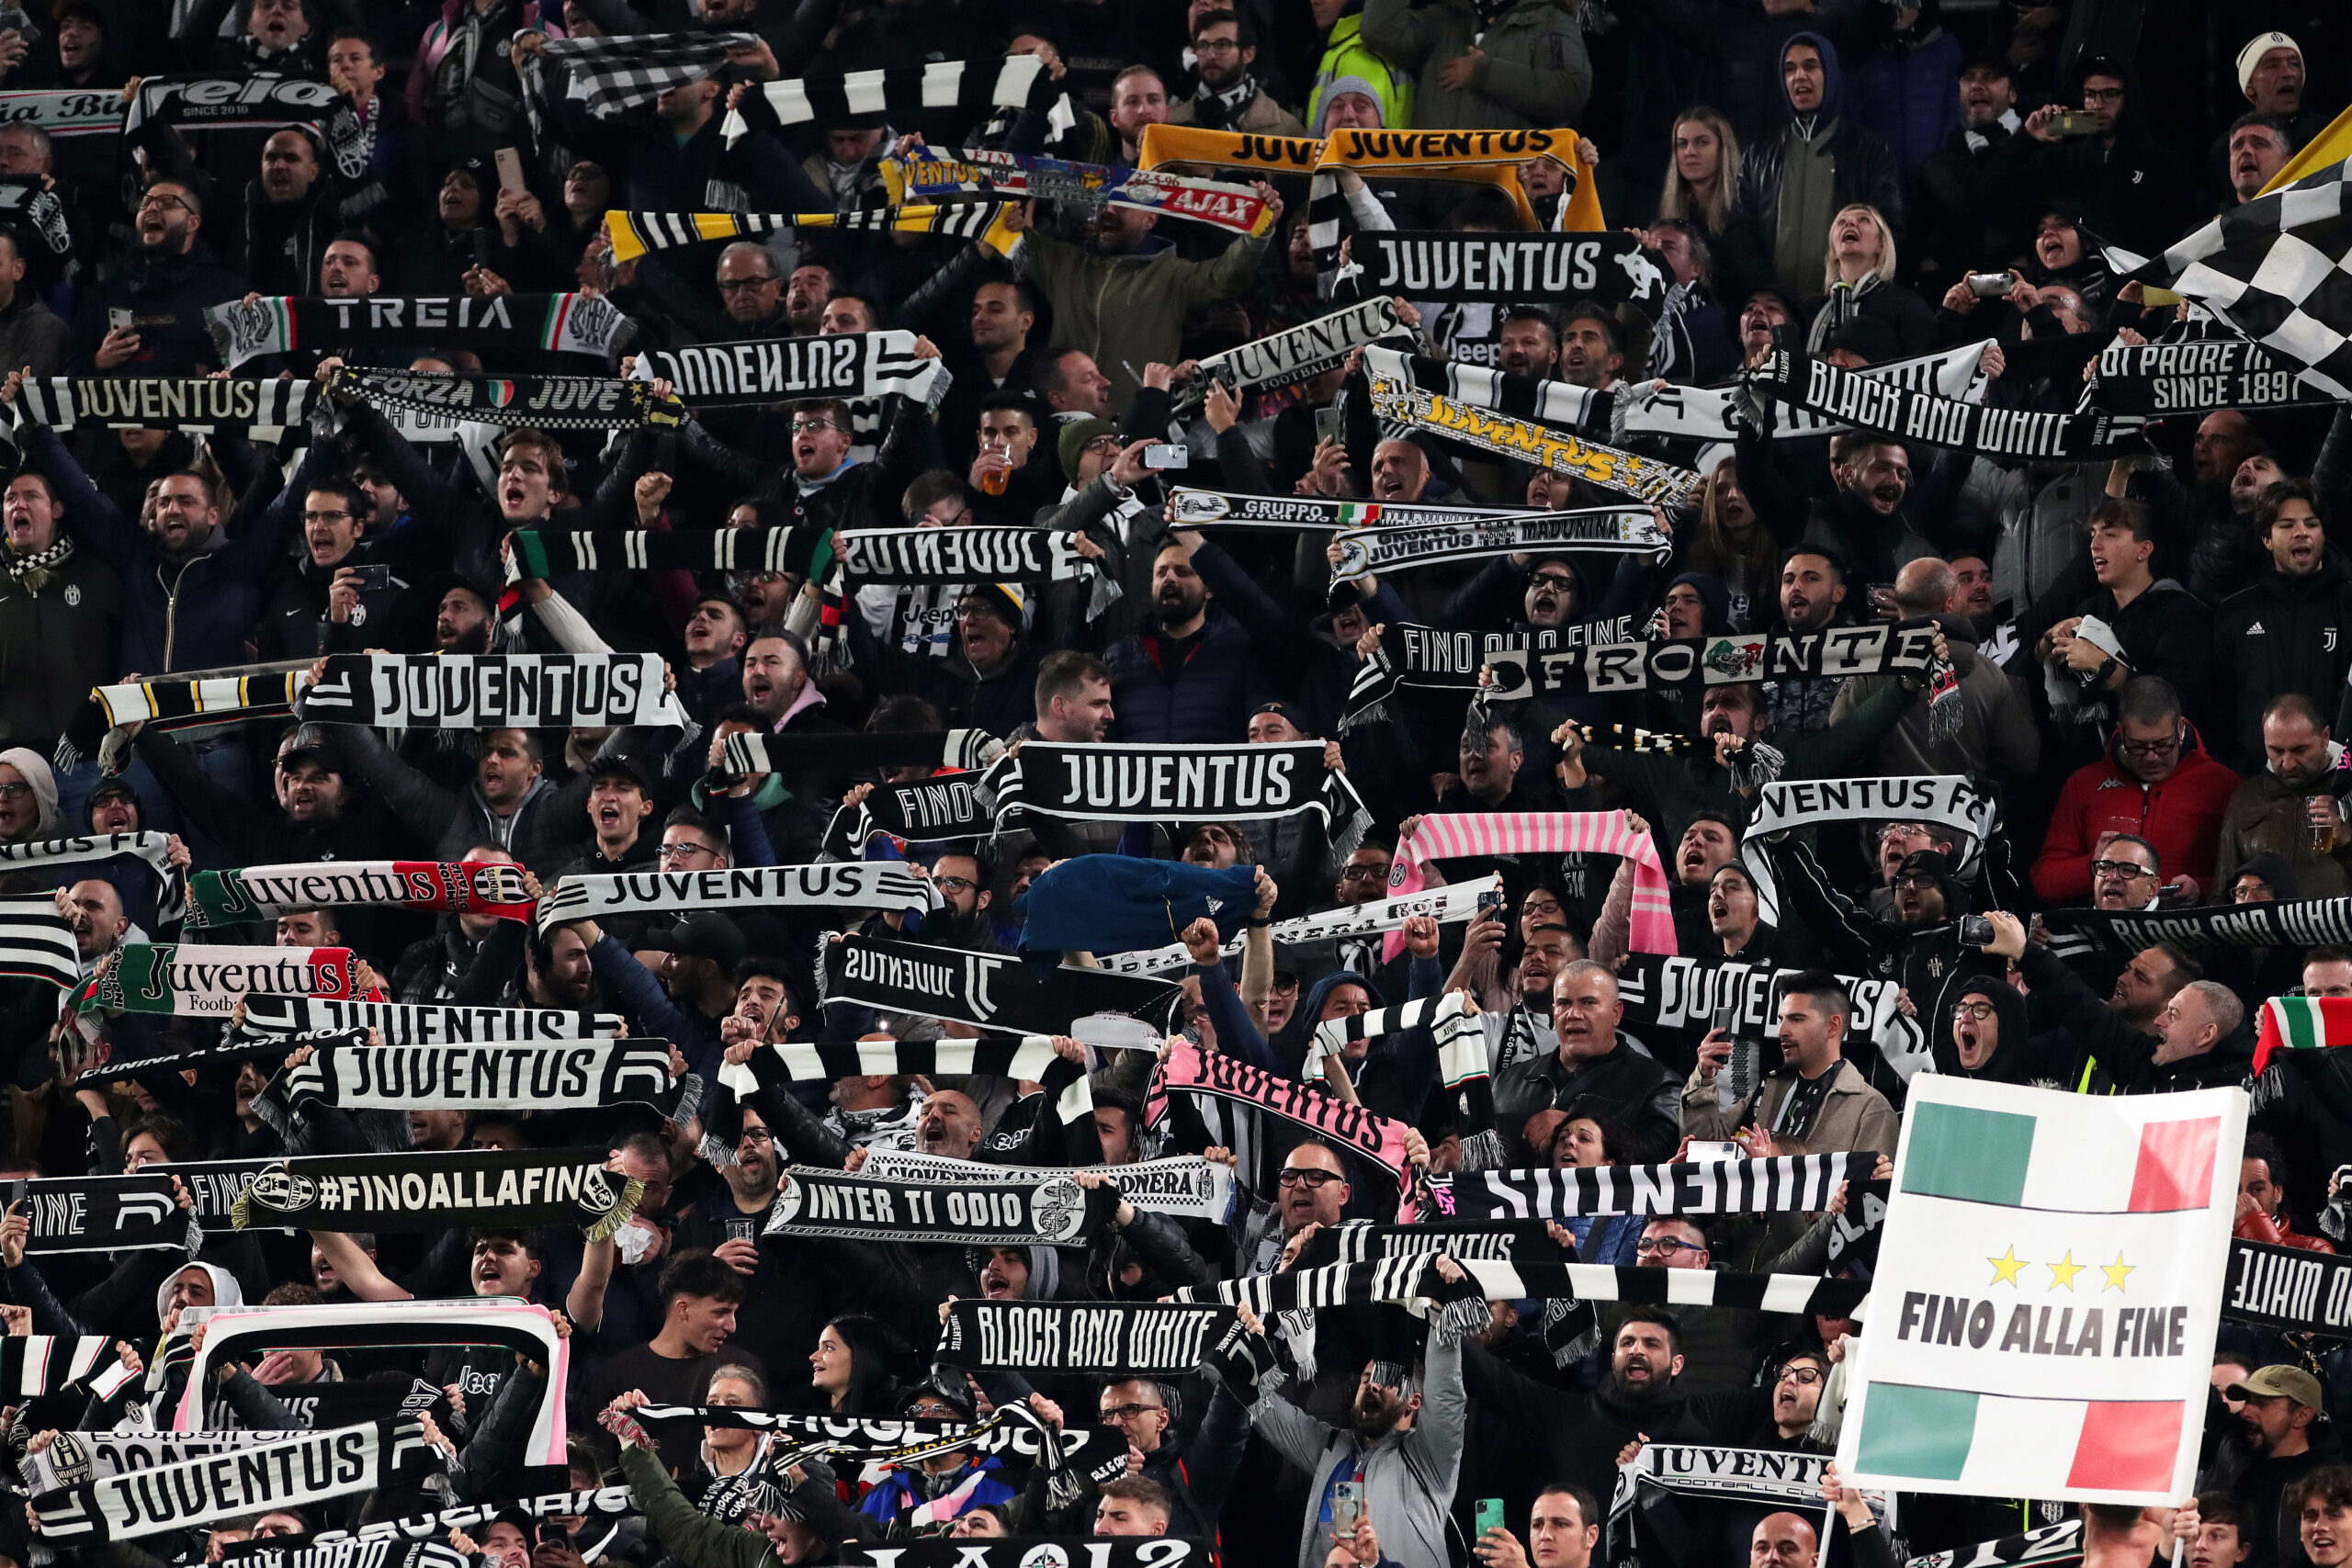 “Il -15 ai bianconeri creerà problemi alle tv!”: polemica sulla penalizzazione inflitta alla Juventus